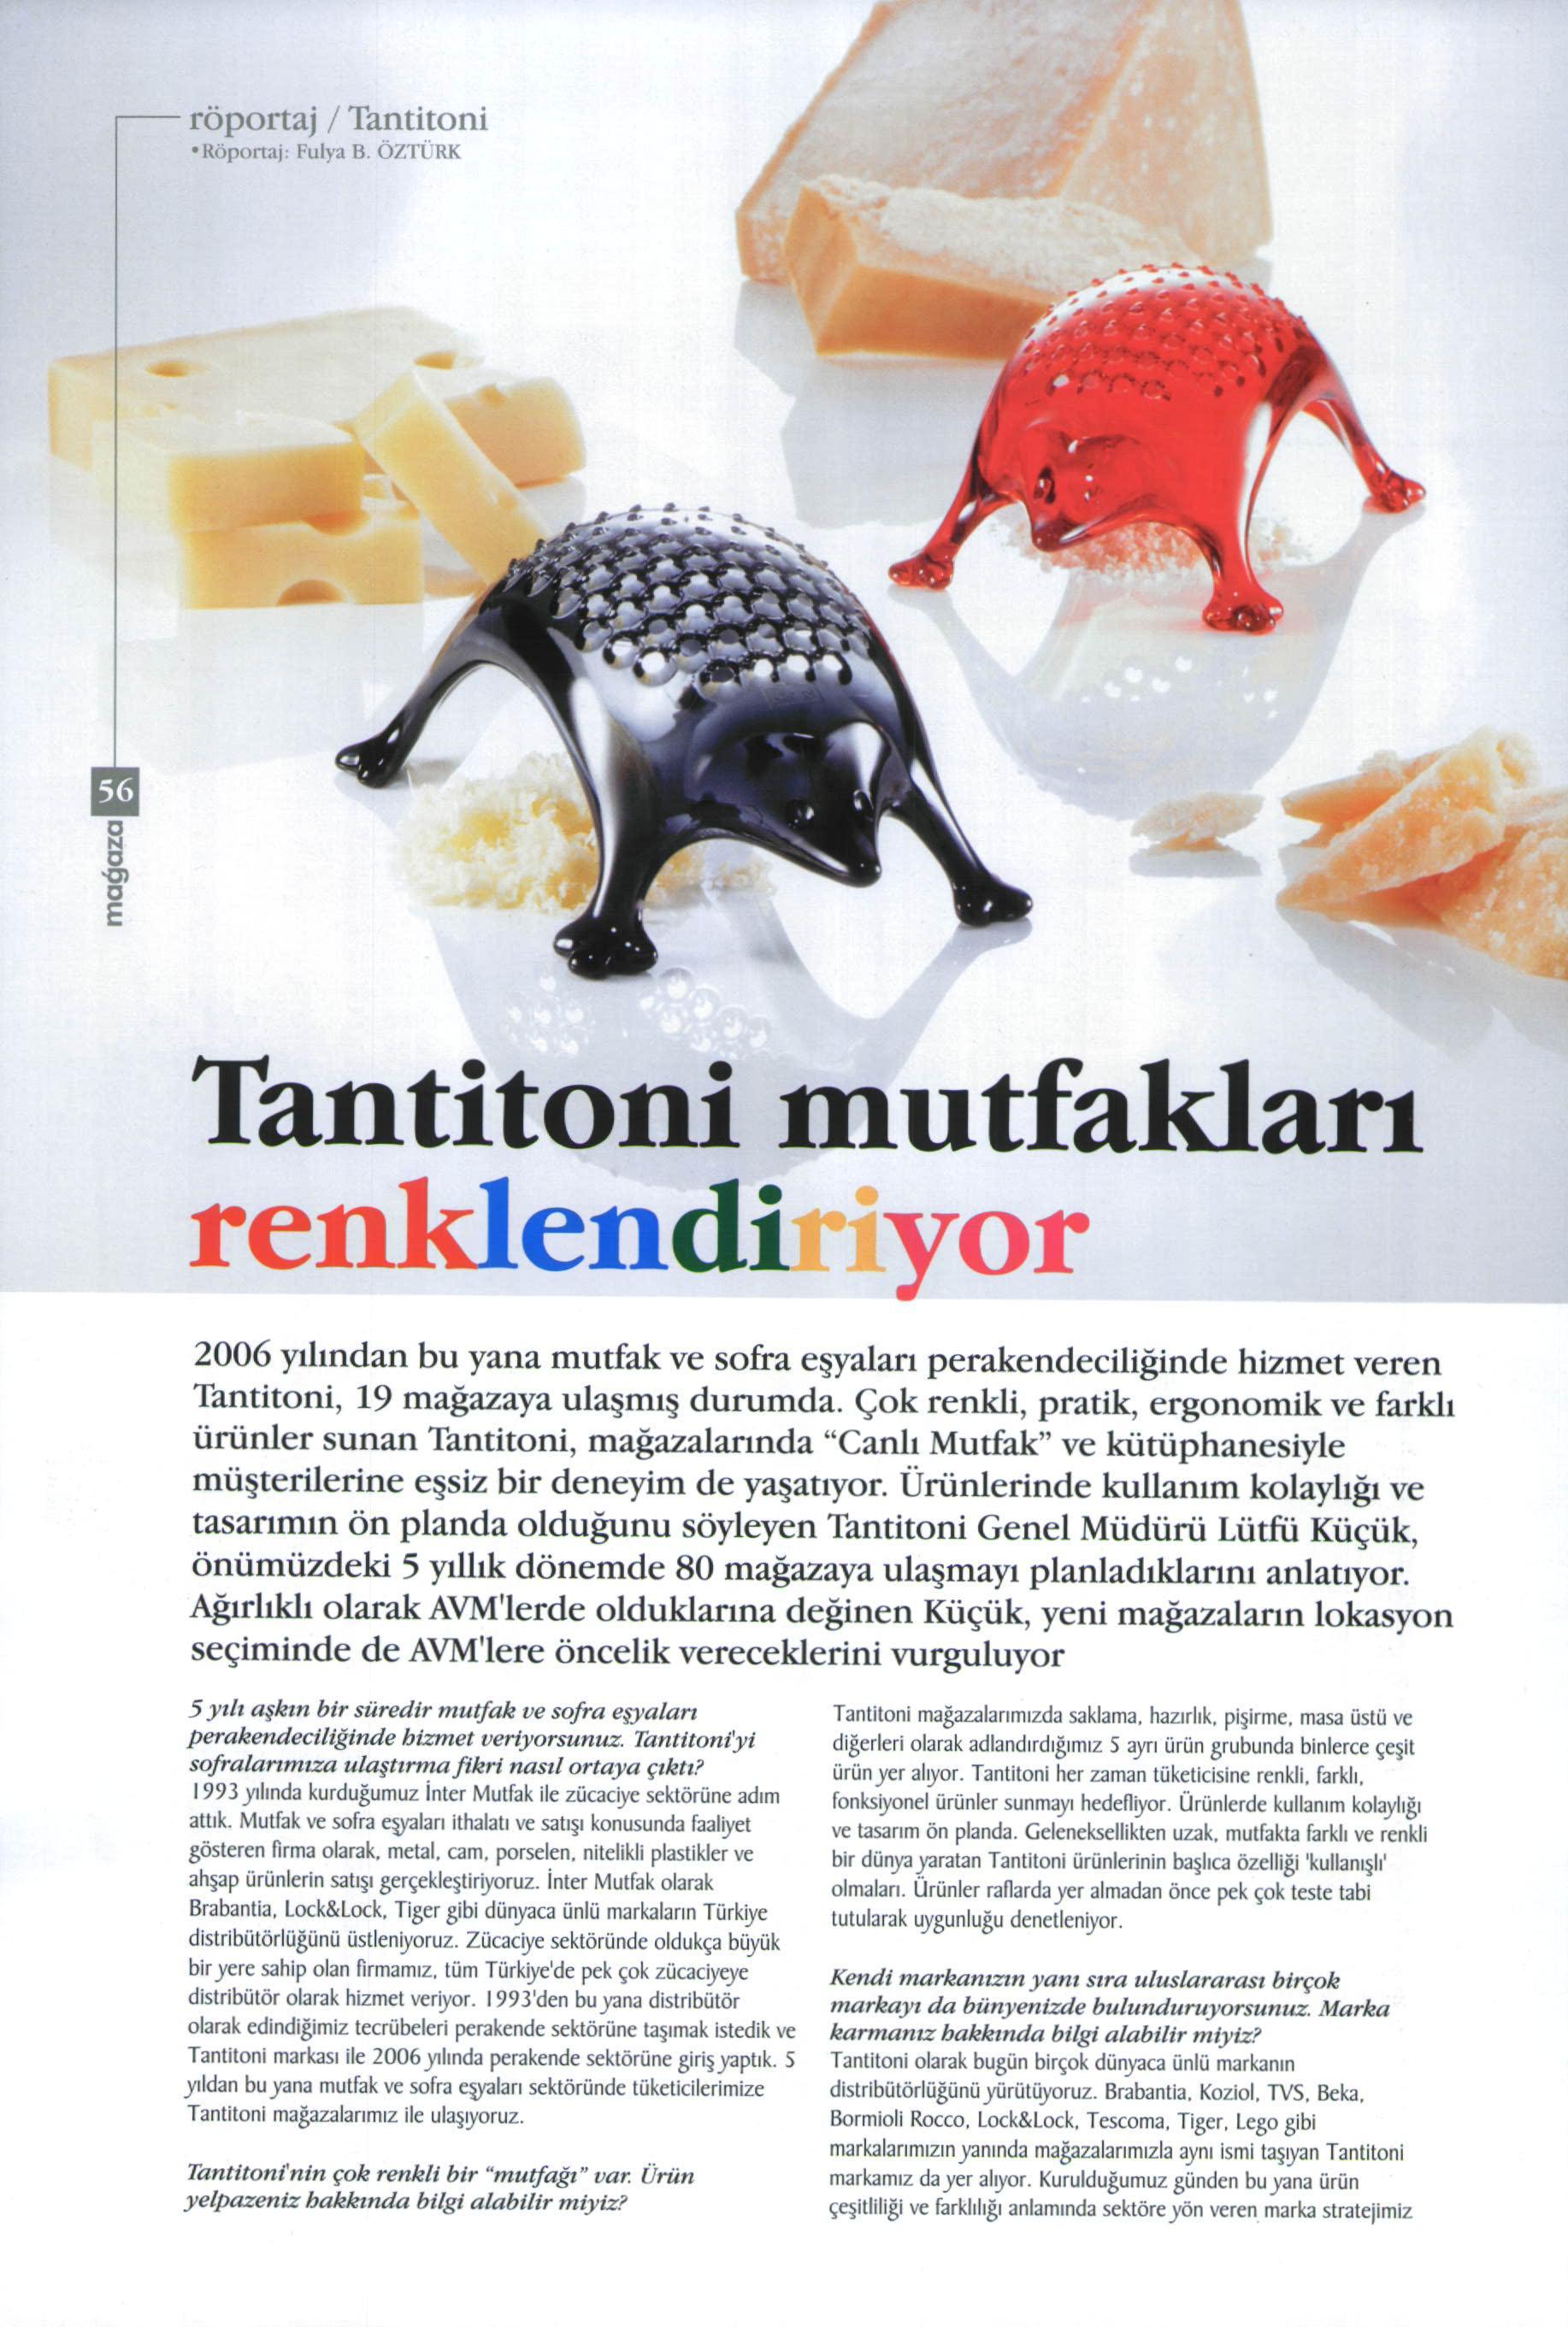 Habertürk Gazetesi - Tantitoni mutfakları renklendiyor